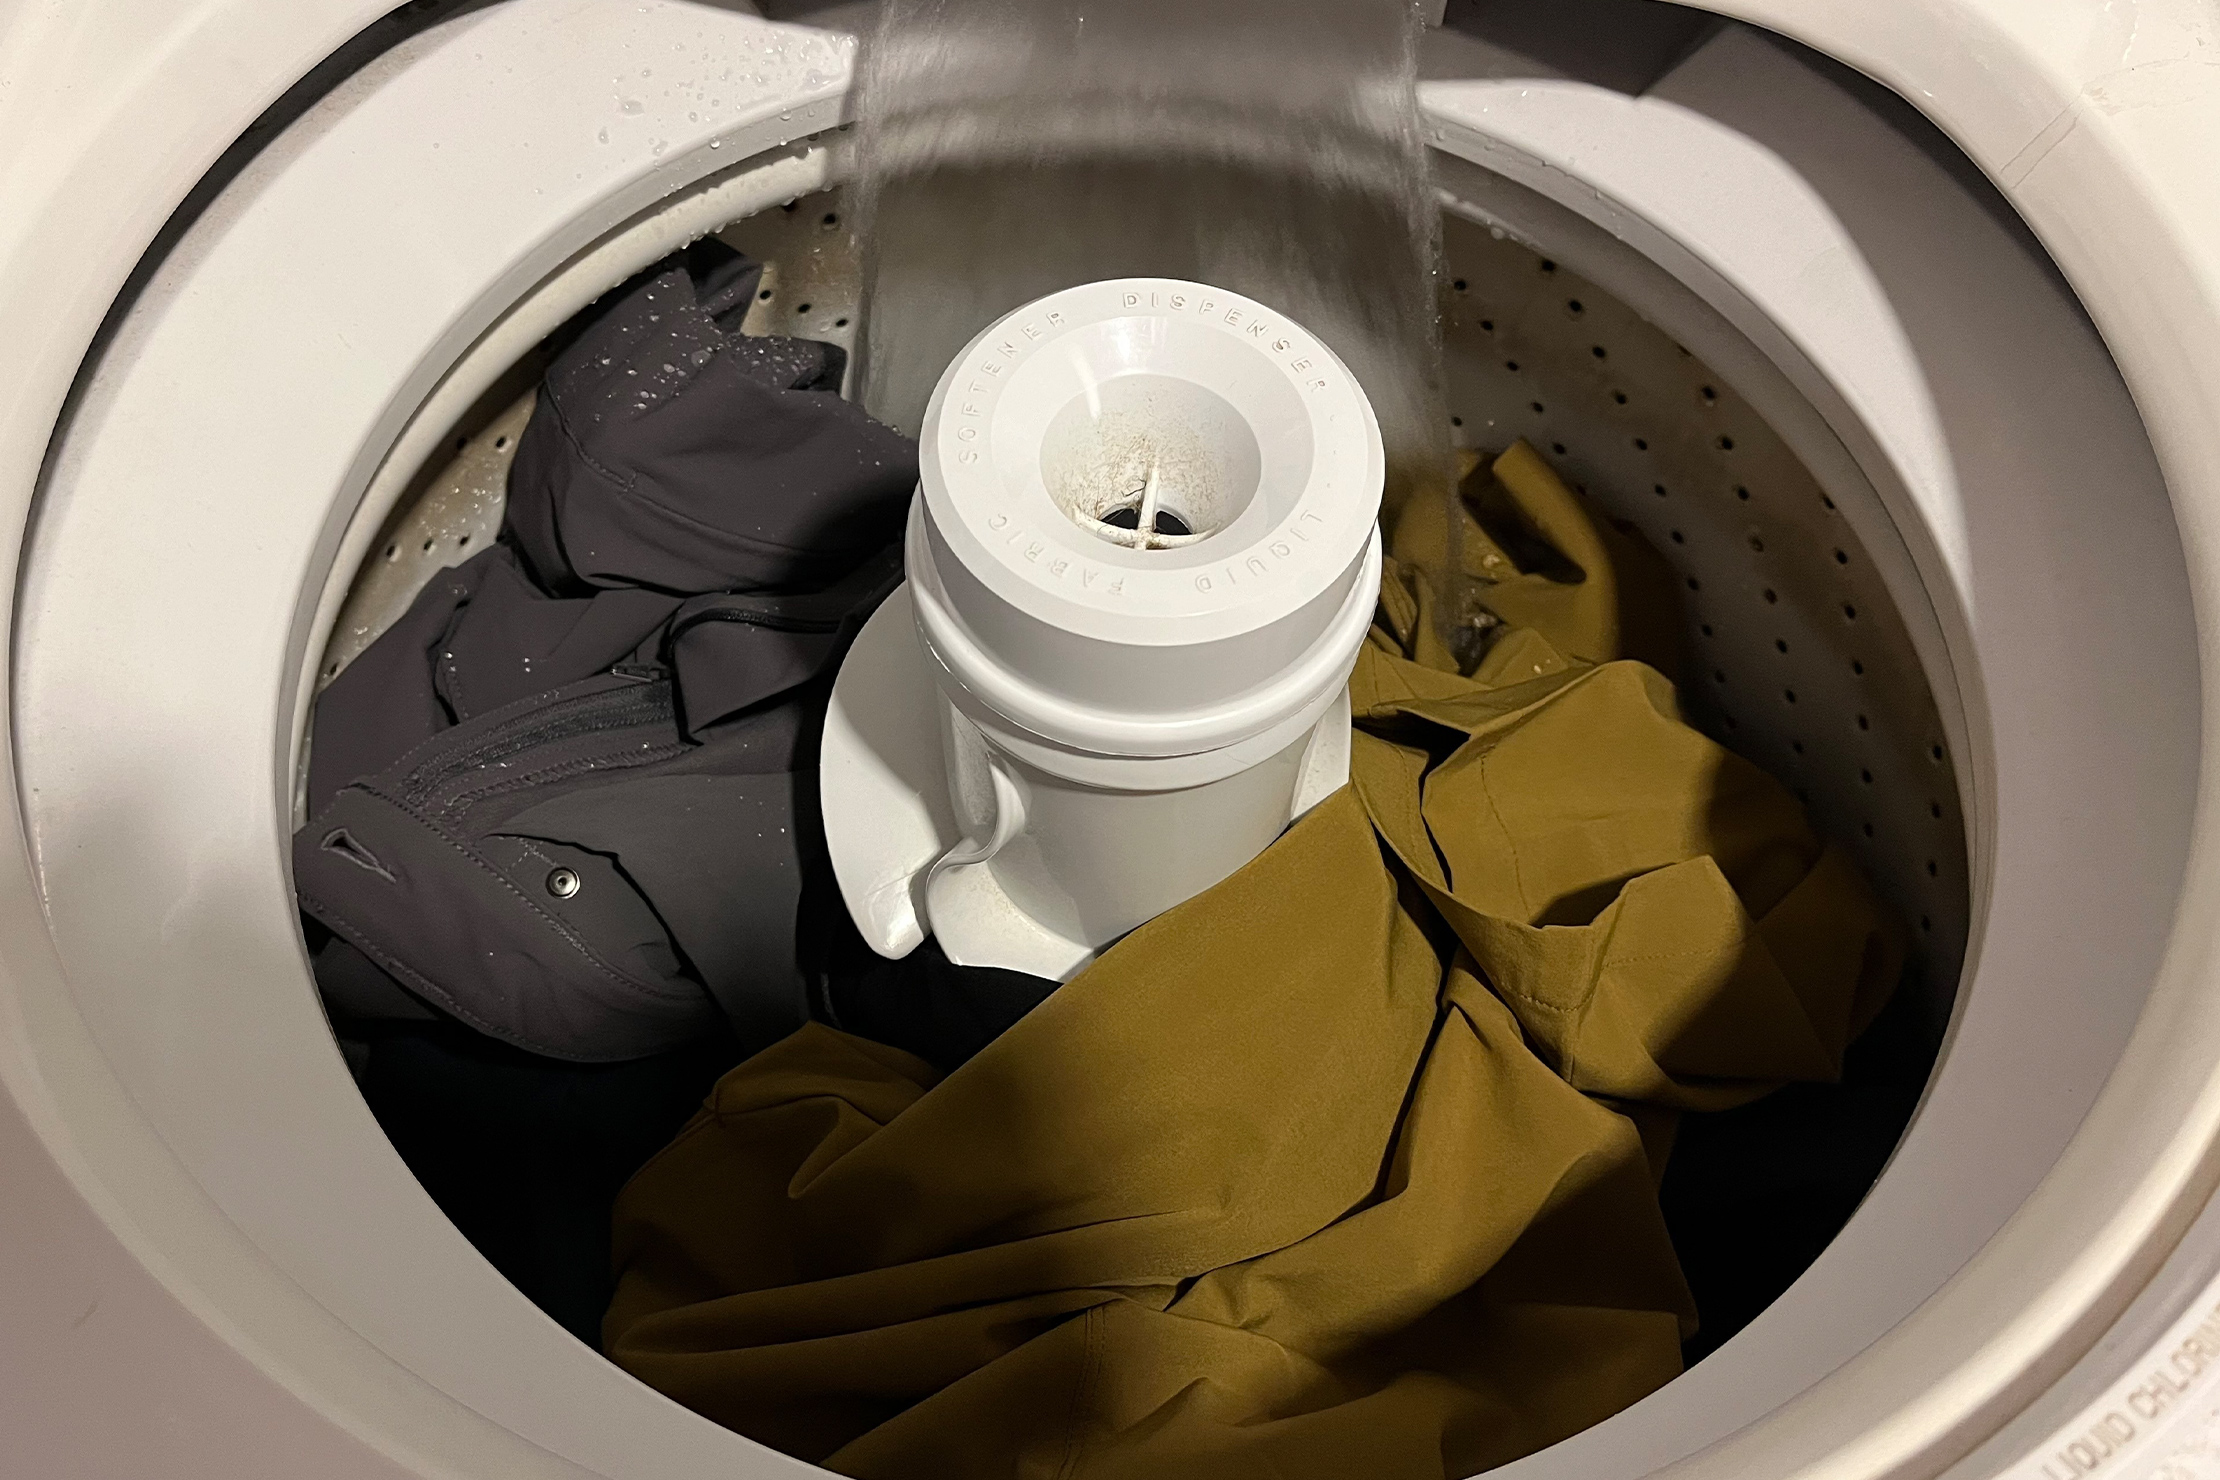 Pants in washing machine